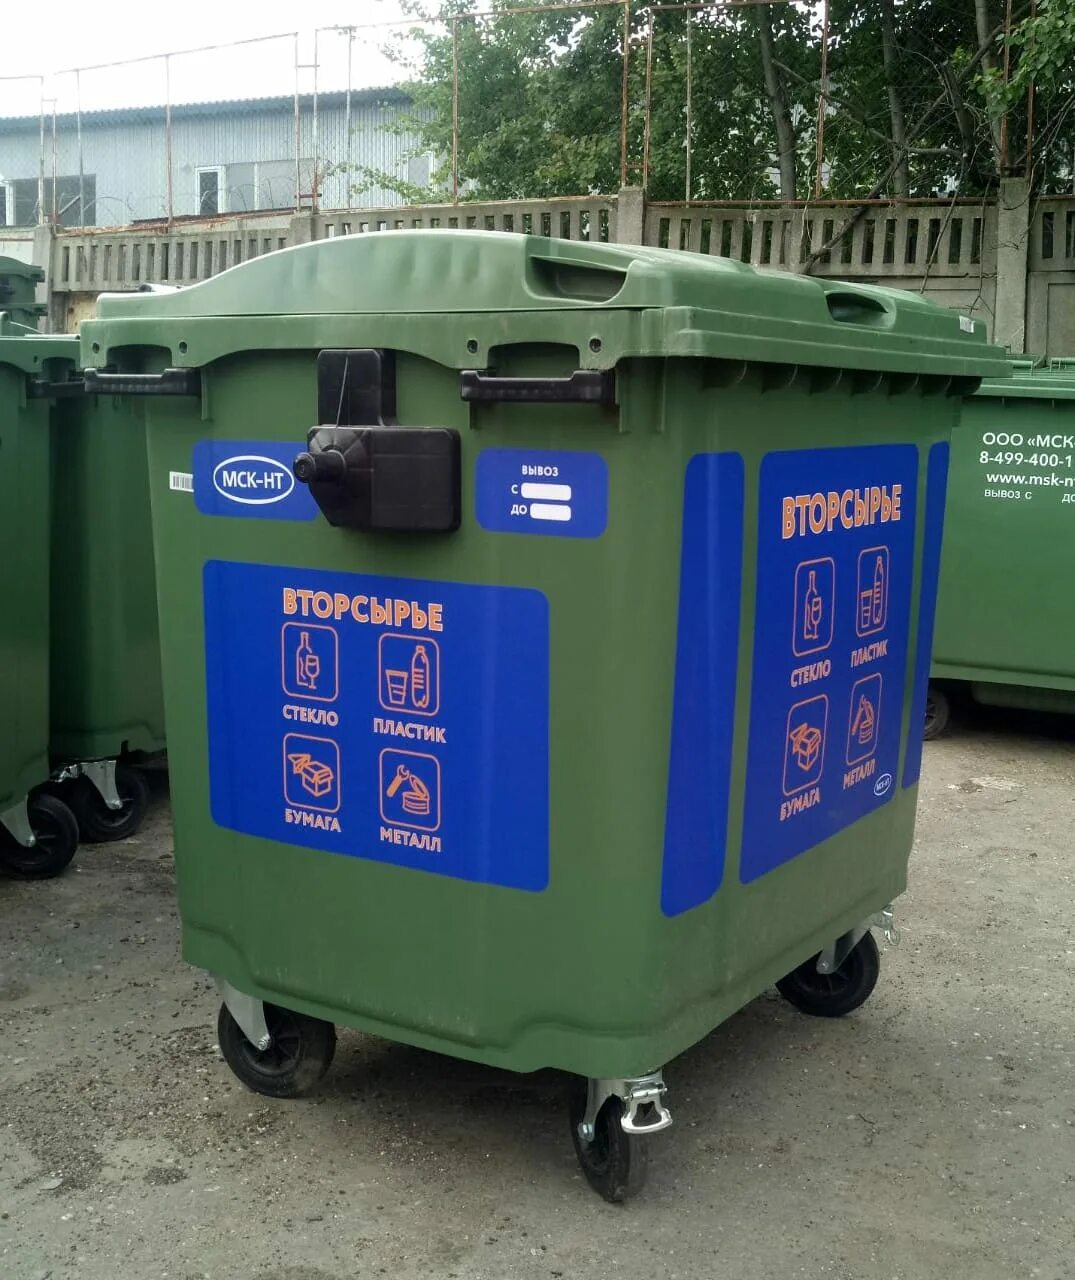 Баки тко. Контейнер ТКО И РСО. Баки для сбора мусора. Промаркированный контейнер для отходов. Контейнеры для раздельного сбора ТКО.